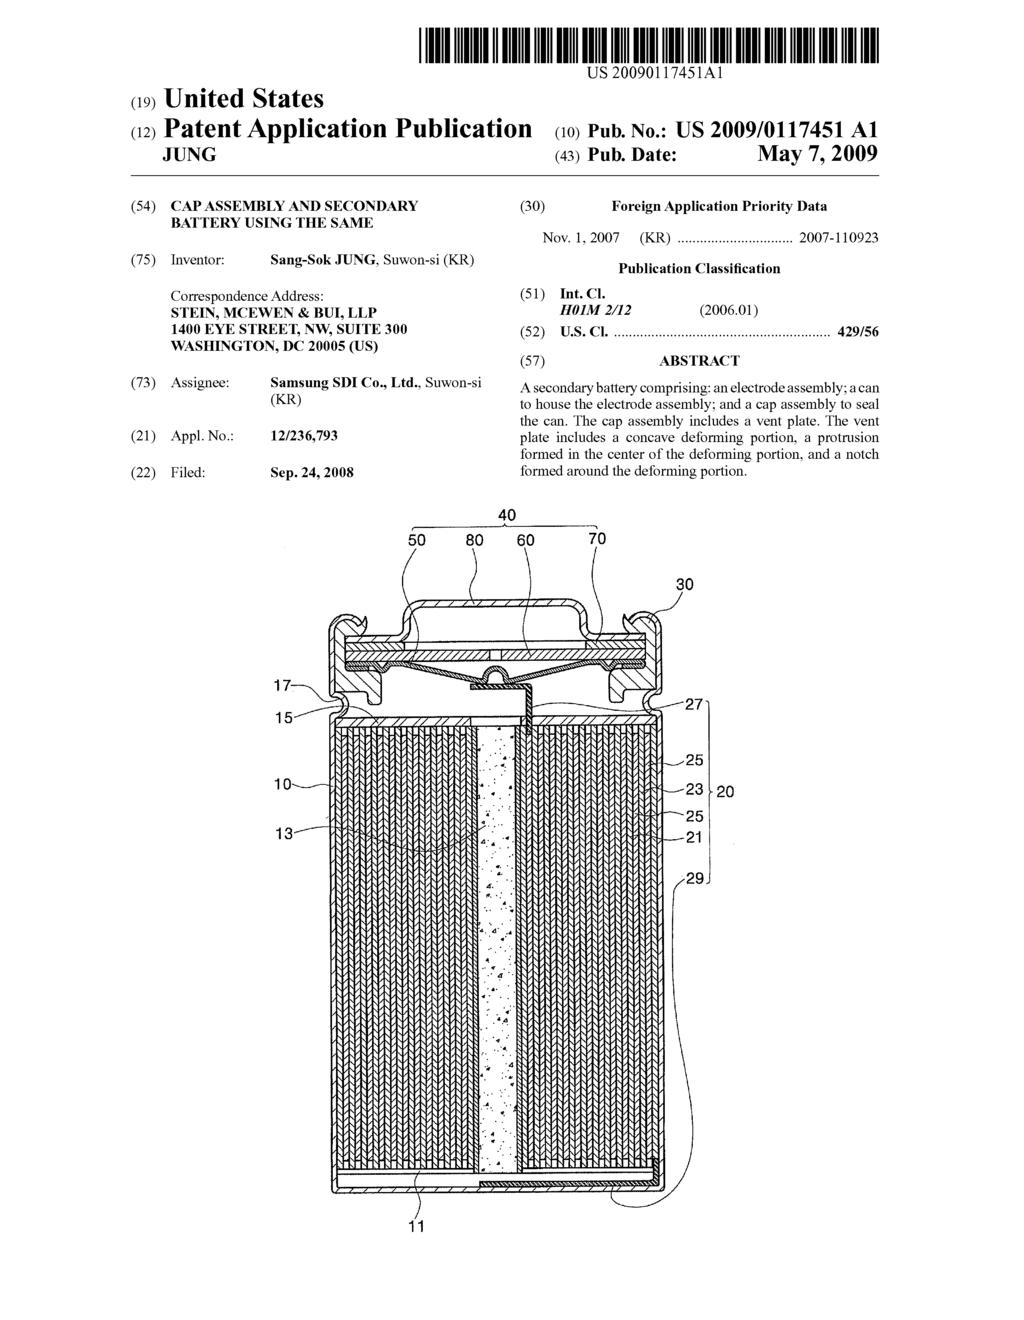 (19) United States (12) Patent Applica JUNG ion Publi icat ion US 200901 17451A1 (10) Pub... NO. (43) Pub.